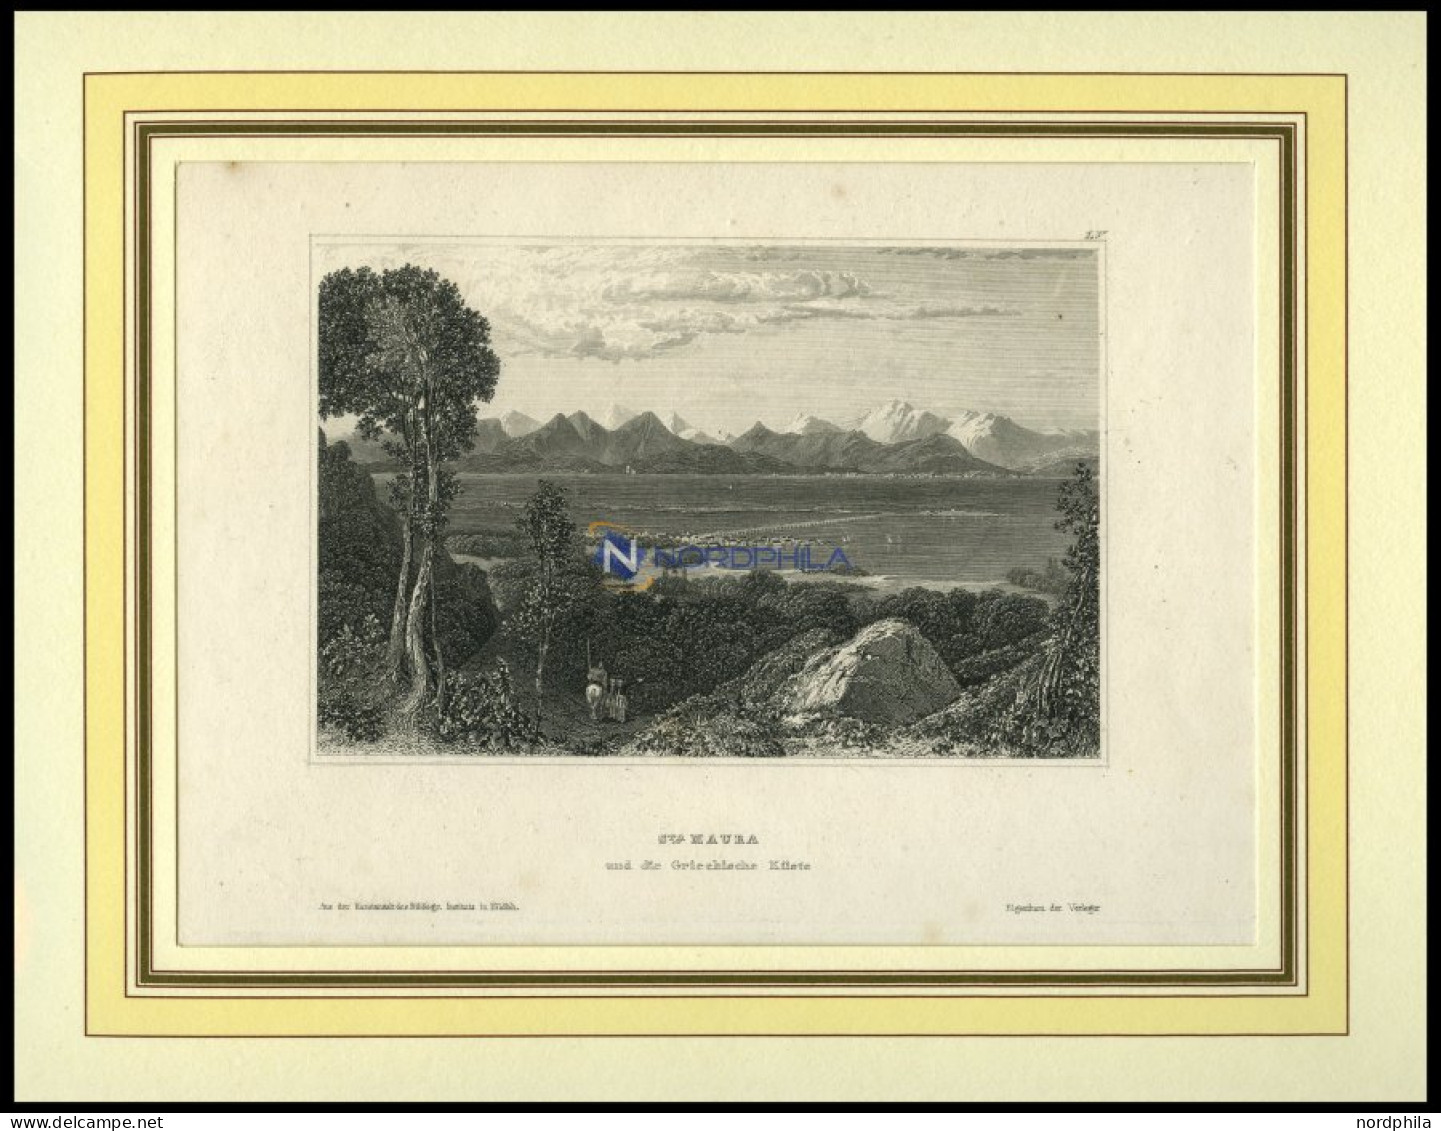 ST.MAURA Und Die Griechische Küste, Stahlstich Von B.I. Um 1840 - Lithografieën